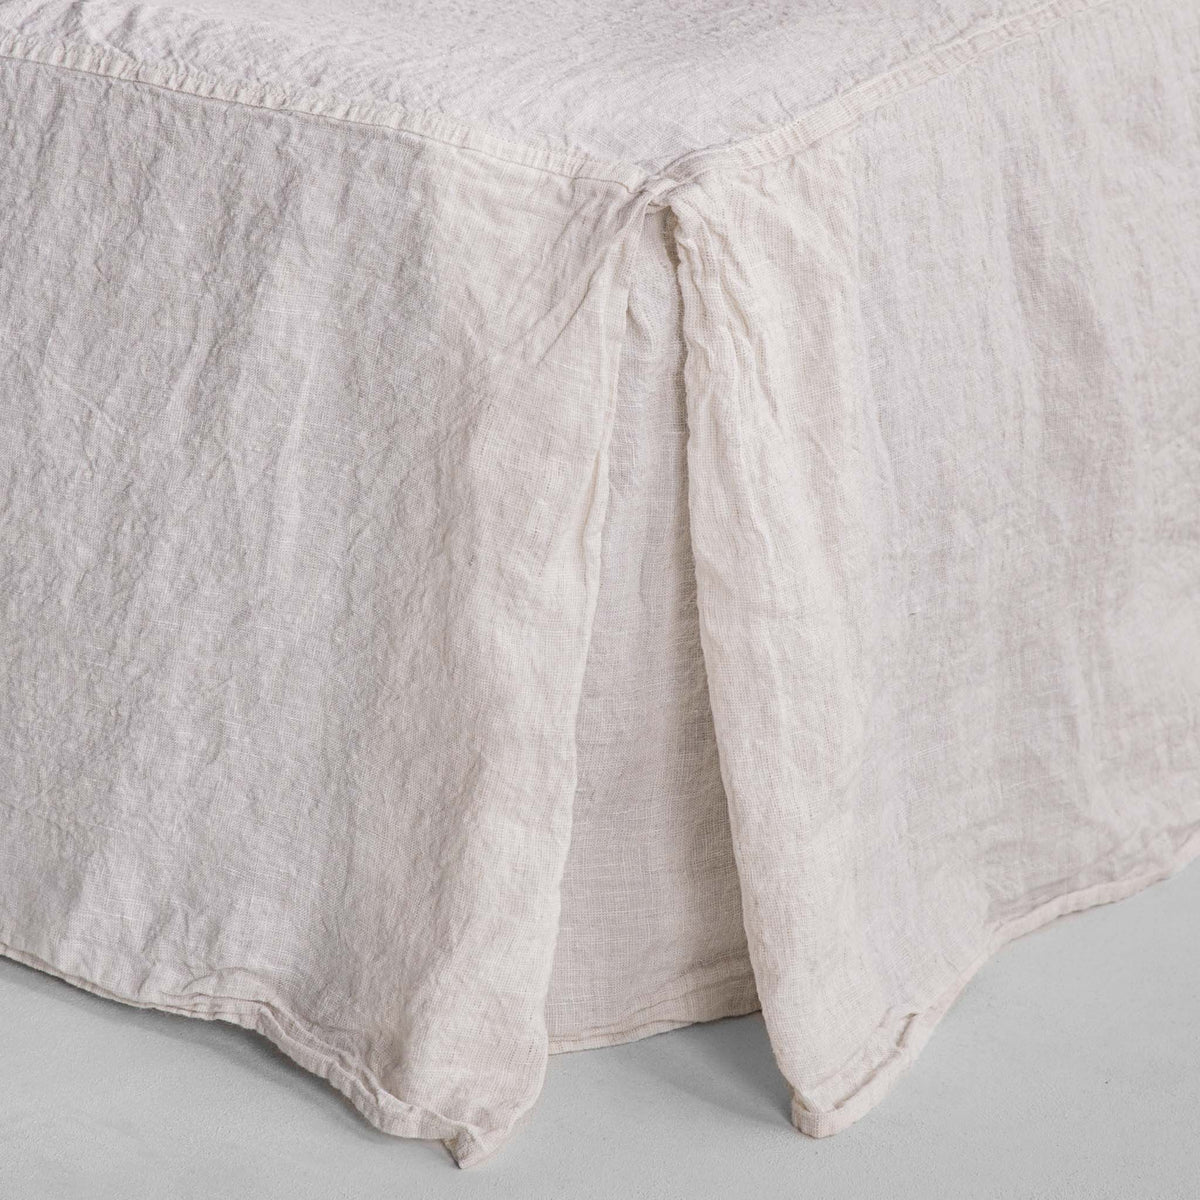 Basix Linen Bed Skirt/Valance - Petra